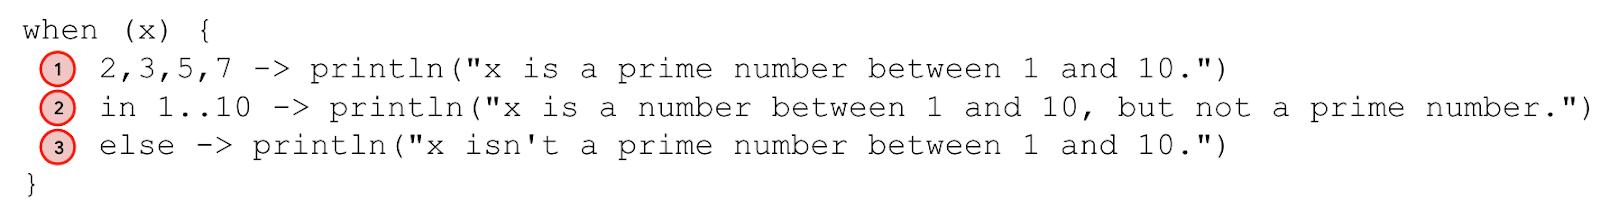 Ce schéma annote l'instruction "when". La ligne "2,3,5,7 -> println("x is a prime number between 1 and 10.")" est annotée comme étant le cas 1. La ligne "in 1..10 -> println("x is a number between 1 and 10, but not a prime number.")" est annotée comme étant le cas 2. La ligne "else -> println("x isn't a prime number between 1 and 10.")" est annotée comme étant le cas 3. 